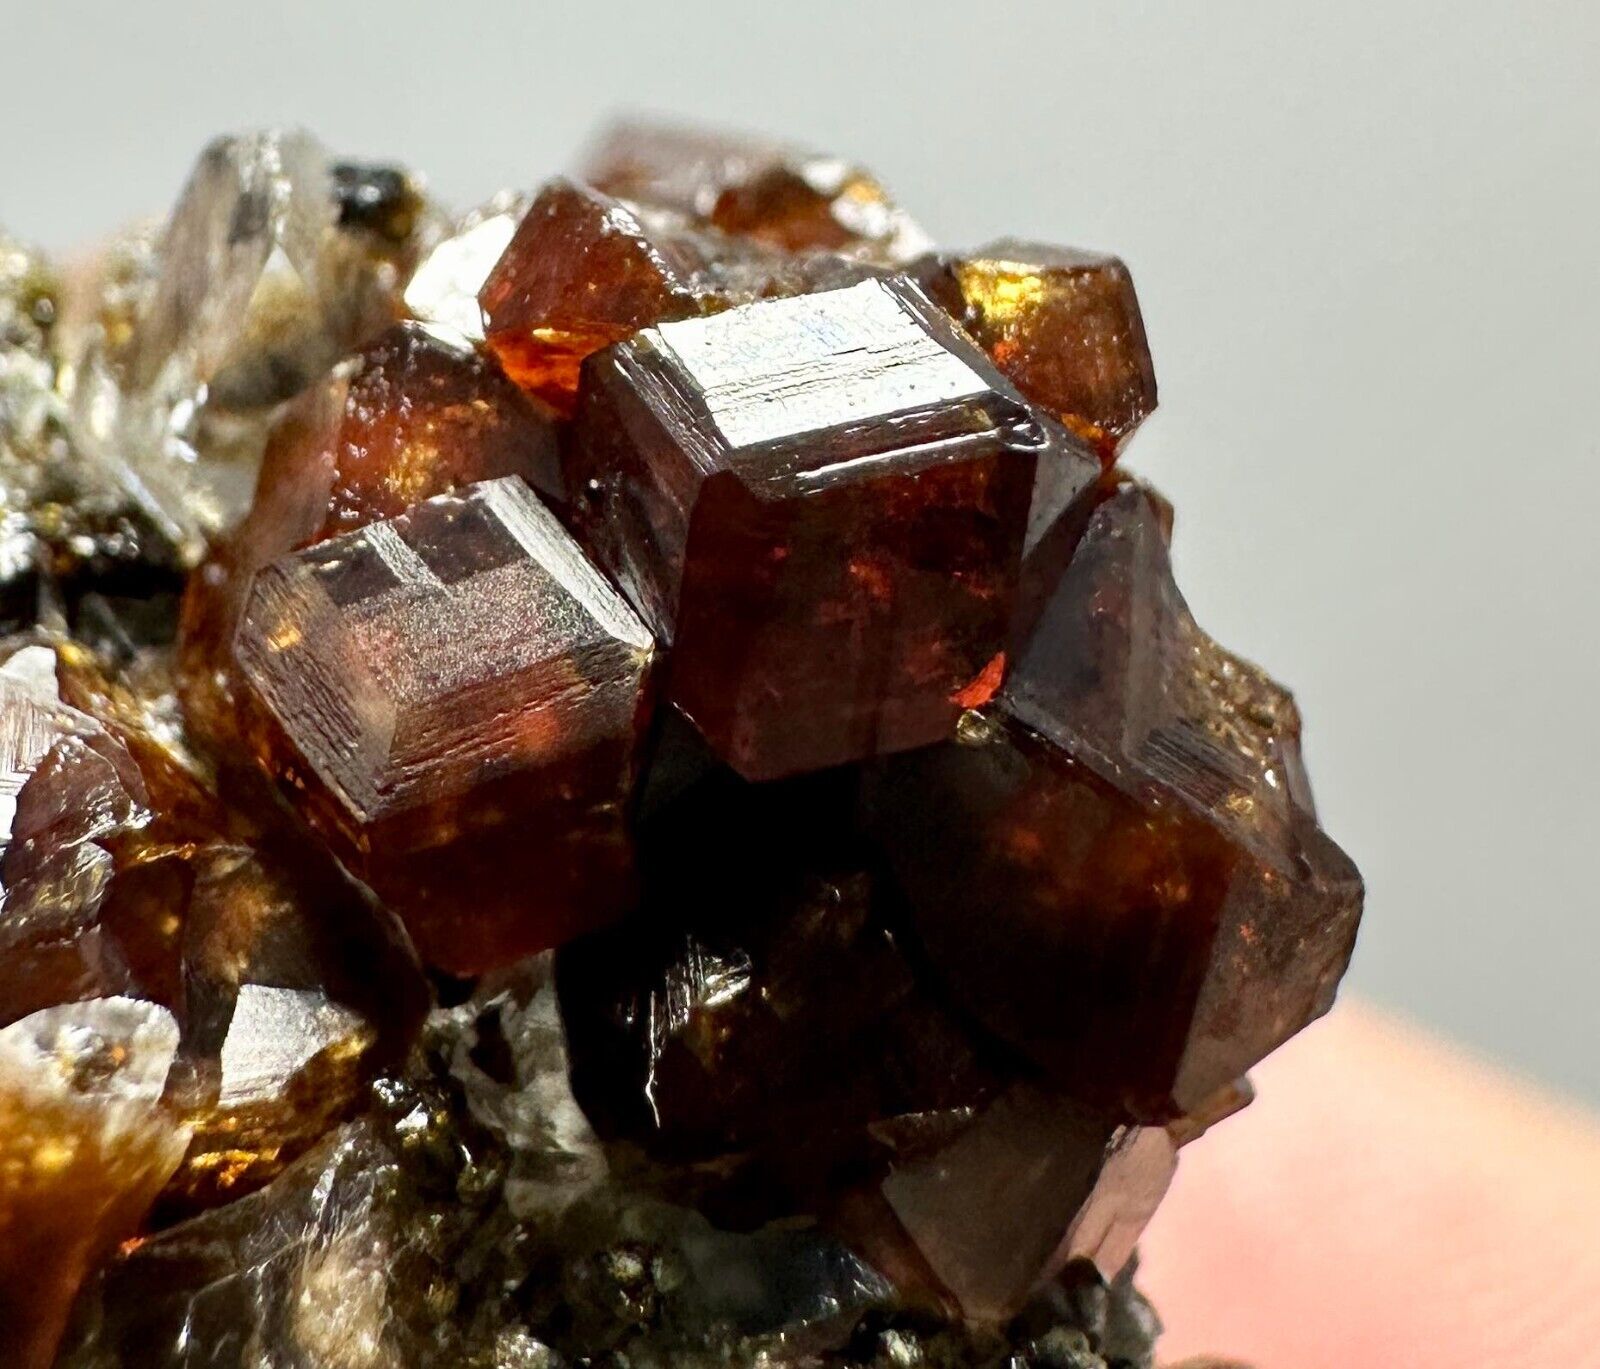 127 Carat Rare Top Color Andradite Garnet Crystals, Quartz On Matrix From @Pak